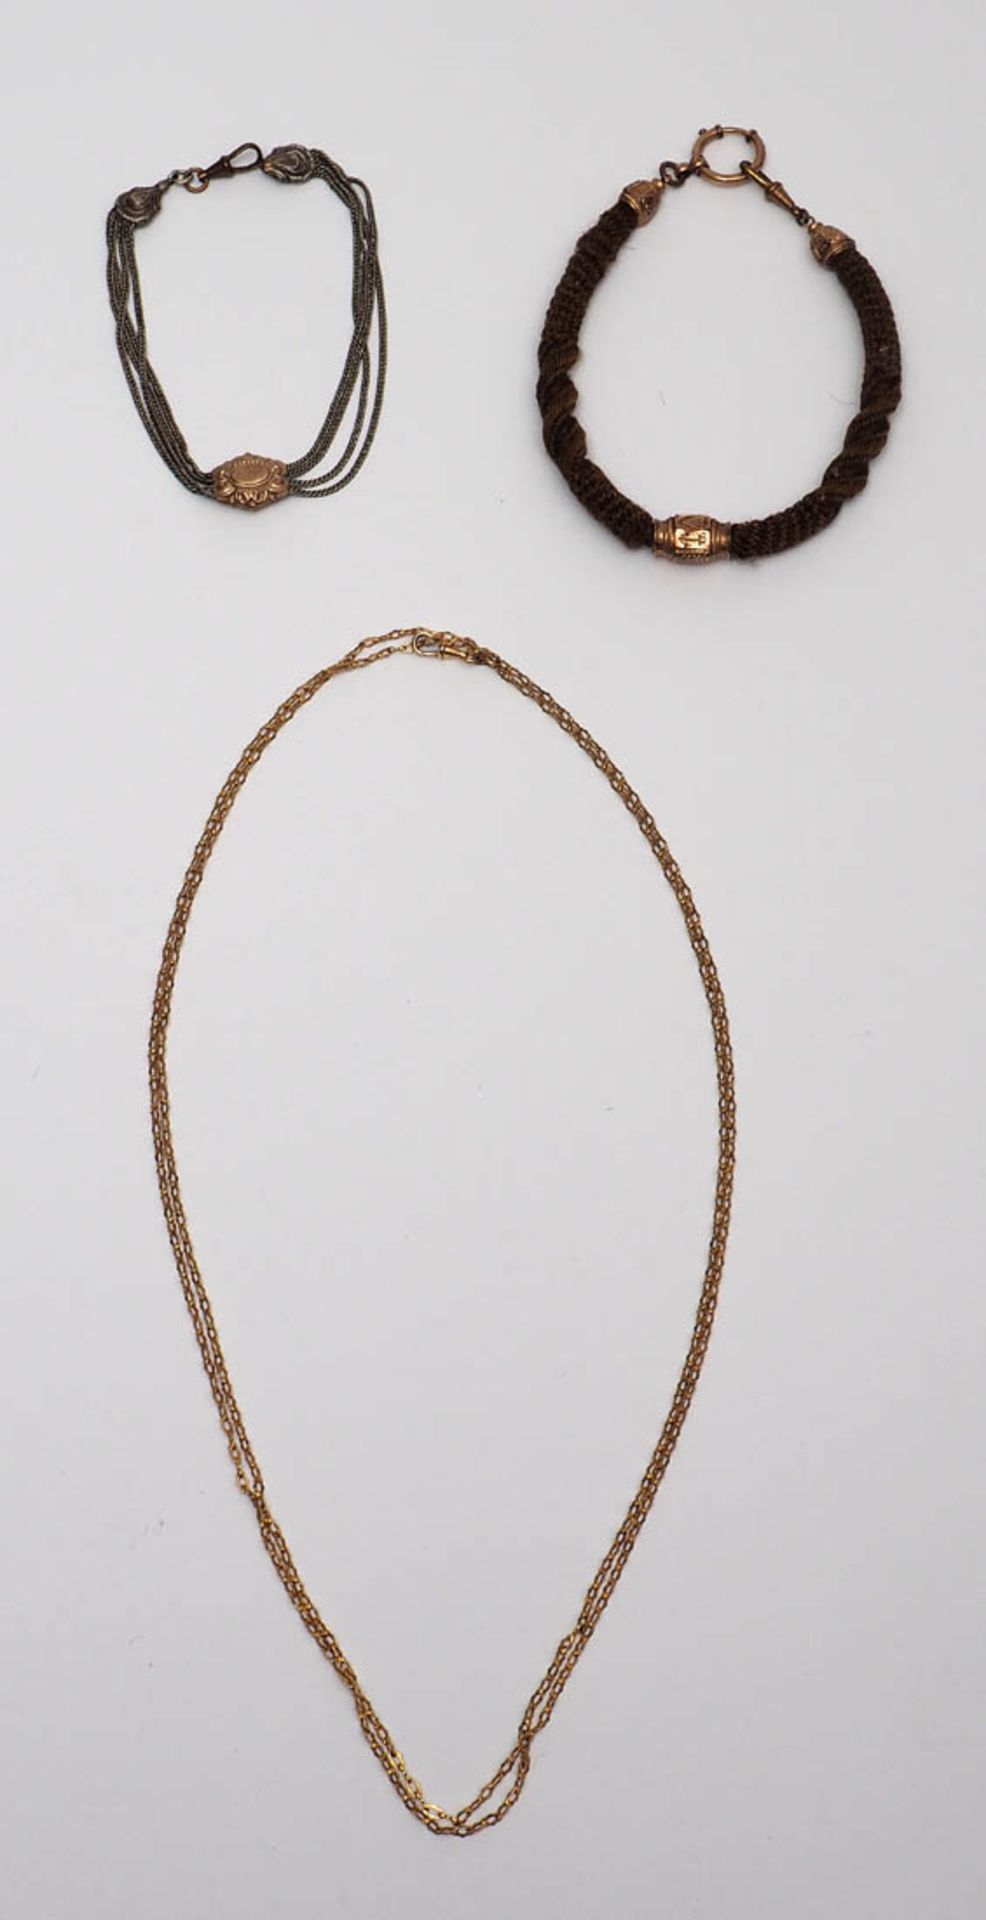 Drei Uhrenketten, 19.Jhdt. Eine aus geflochtenem Haar mit feuervergoldeten Schiebern, eine aus